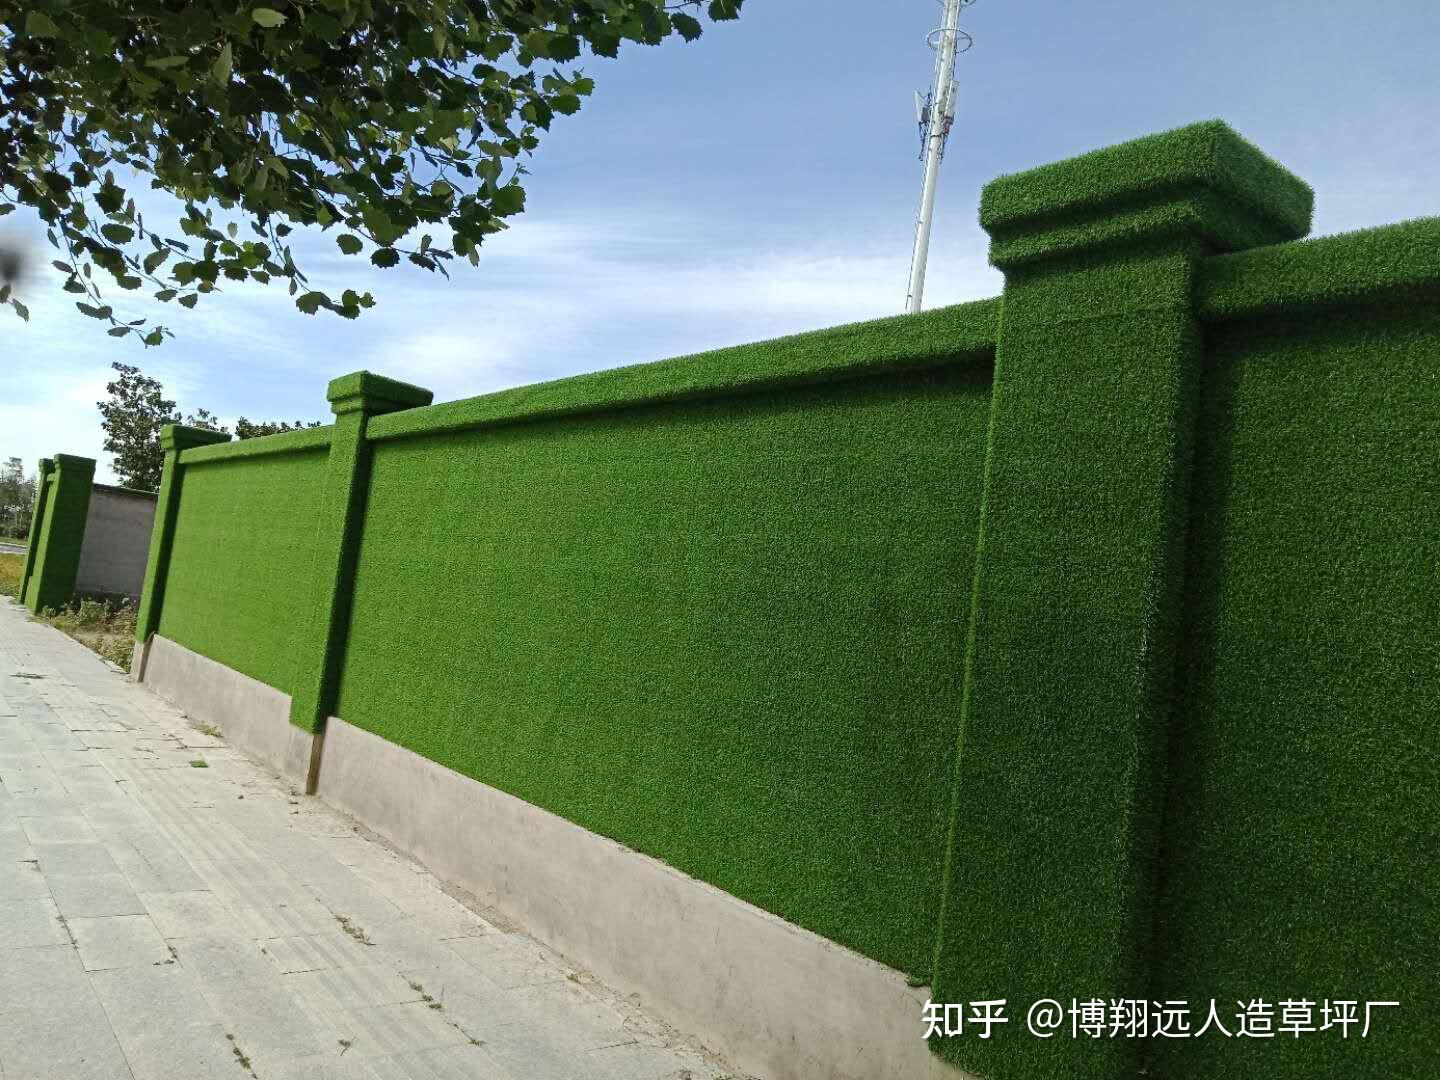 仿真草皮_仿真室外草皮 定制绿植装饰植物墙墙面背景 外墙假植景观 - 阿里巴巴